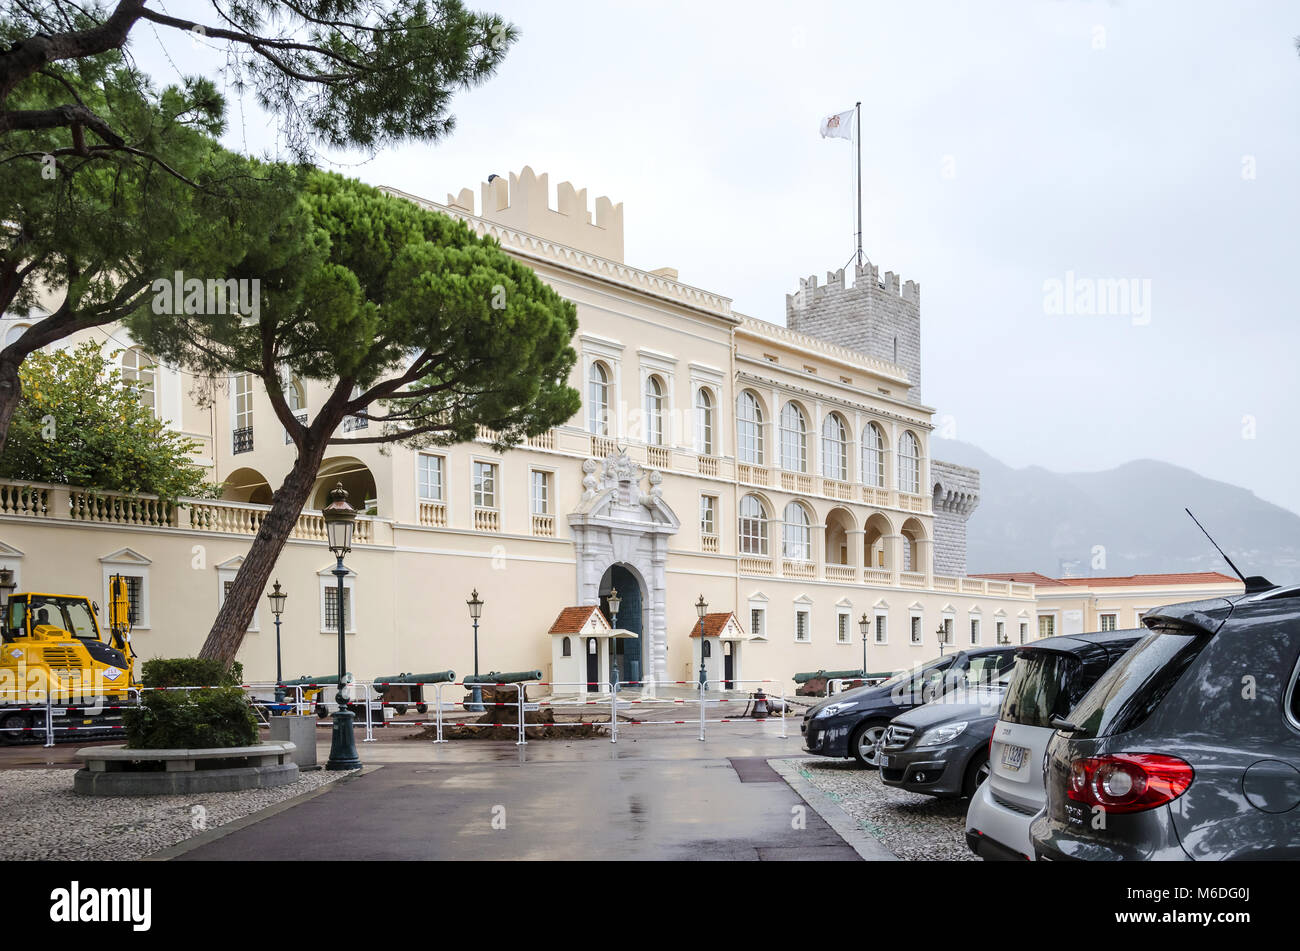 Monaco, Principauté de Monaco - 3 novembre, 2015 : Le point de vue de l'entrée dans le Palais du Prince, accueil de l'actuel roi Albert II Banque D'Images